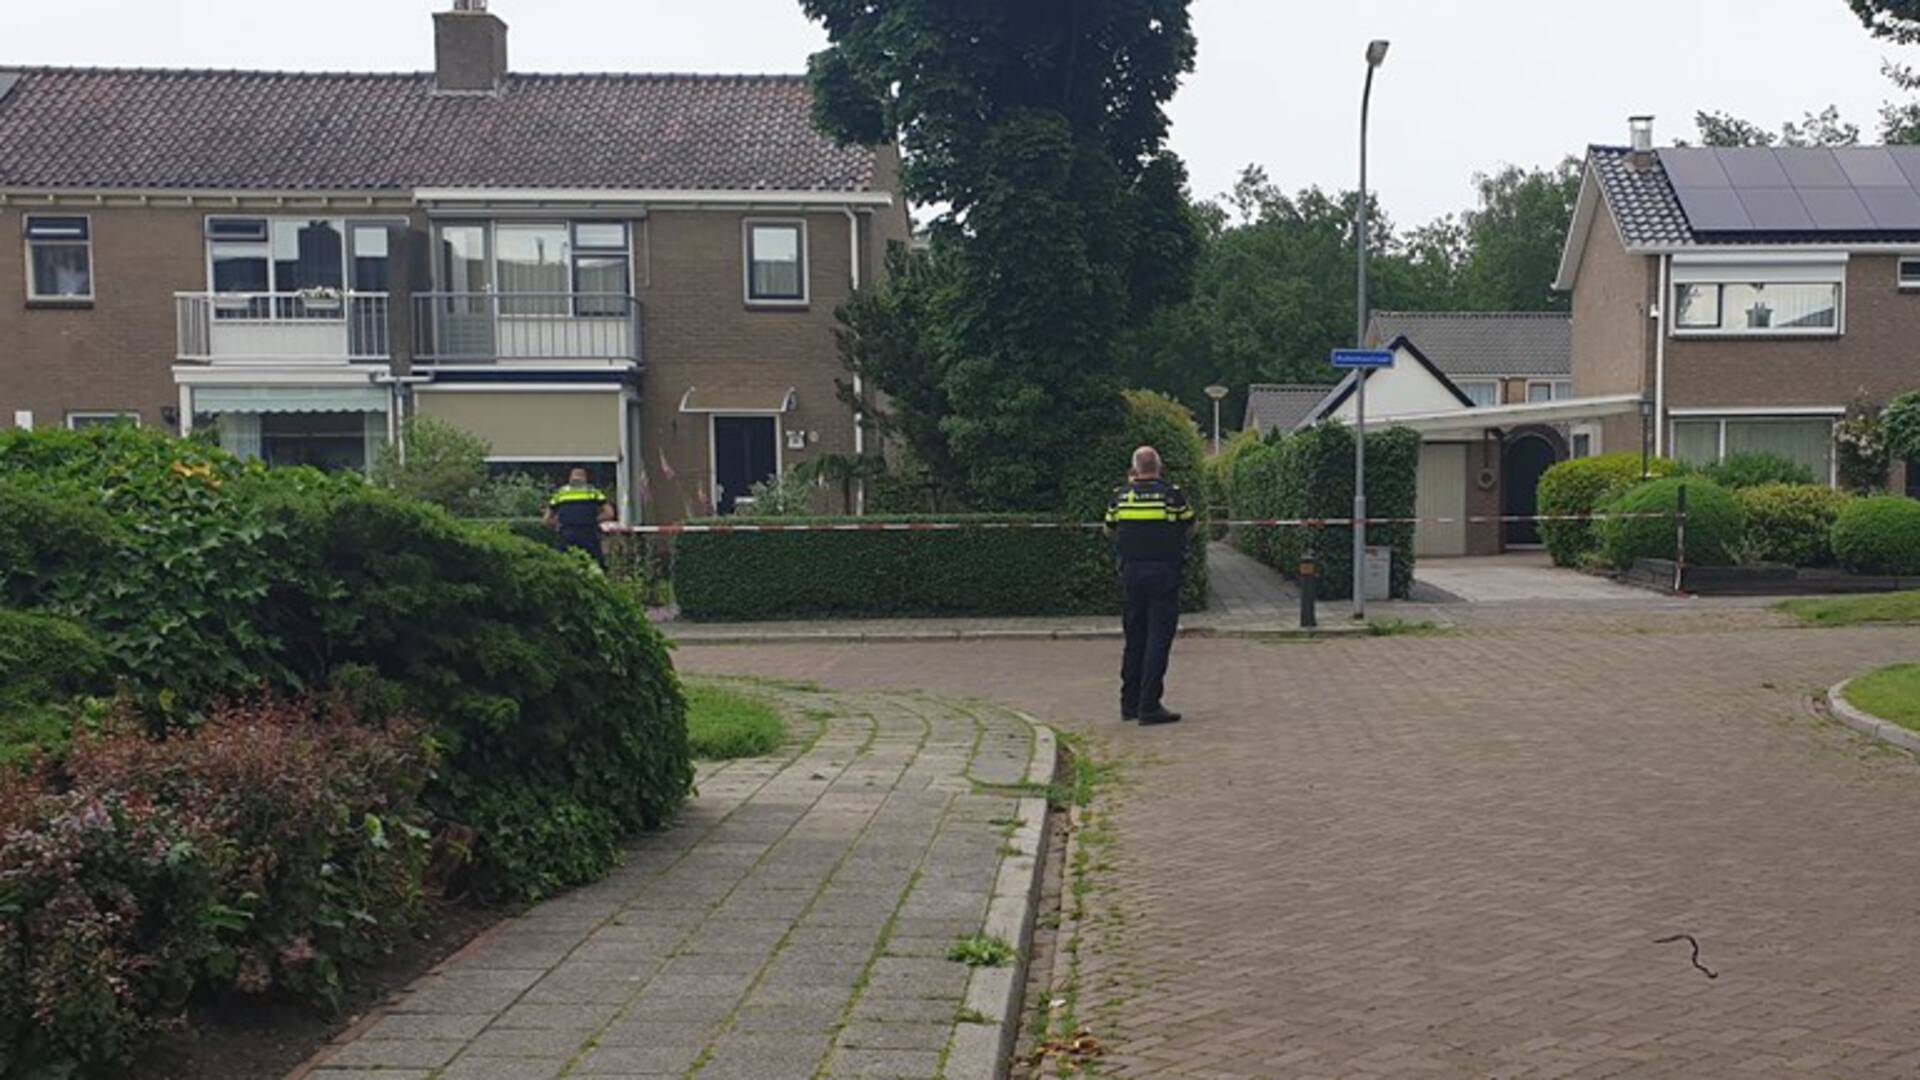 اعتقال رجل بتهمة التحرش بطفلة تبلغ من العمر 5 سنوات في رودن في هولندا